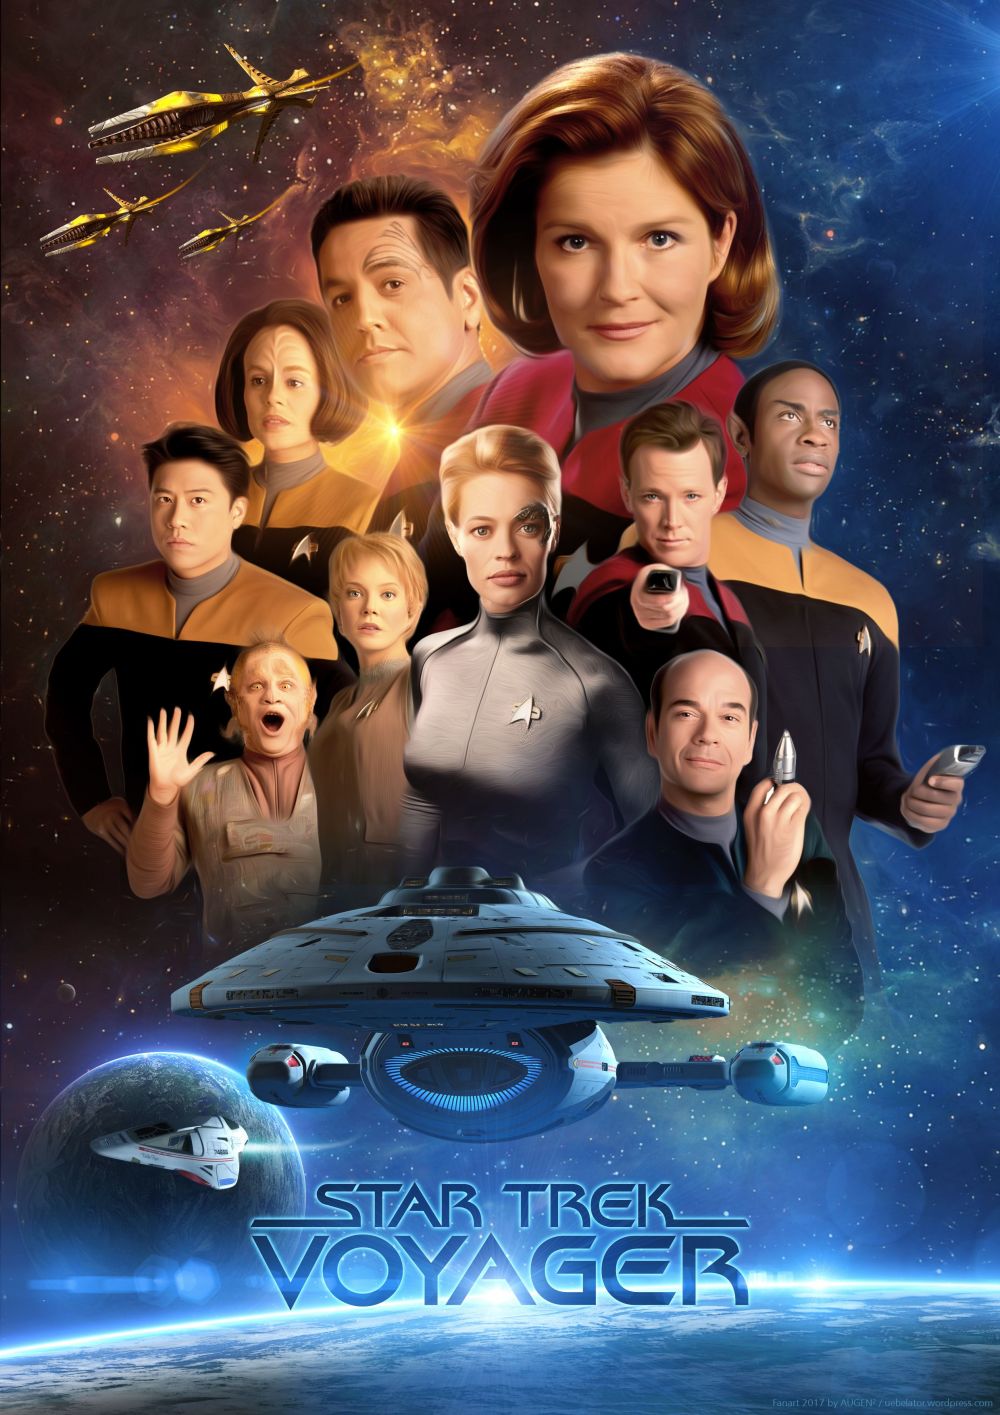 Star Trek: VOY (Voyager)